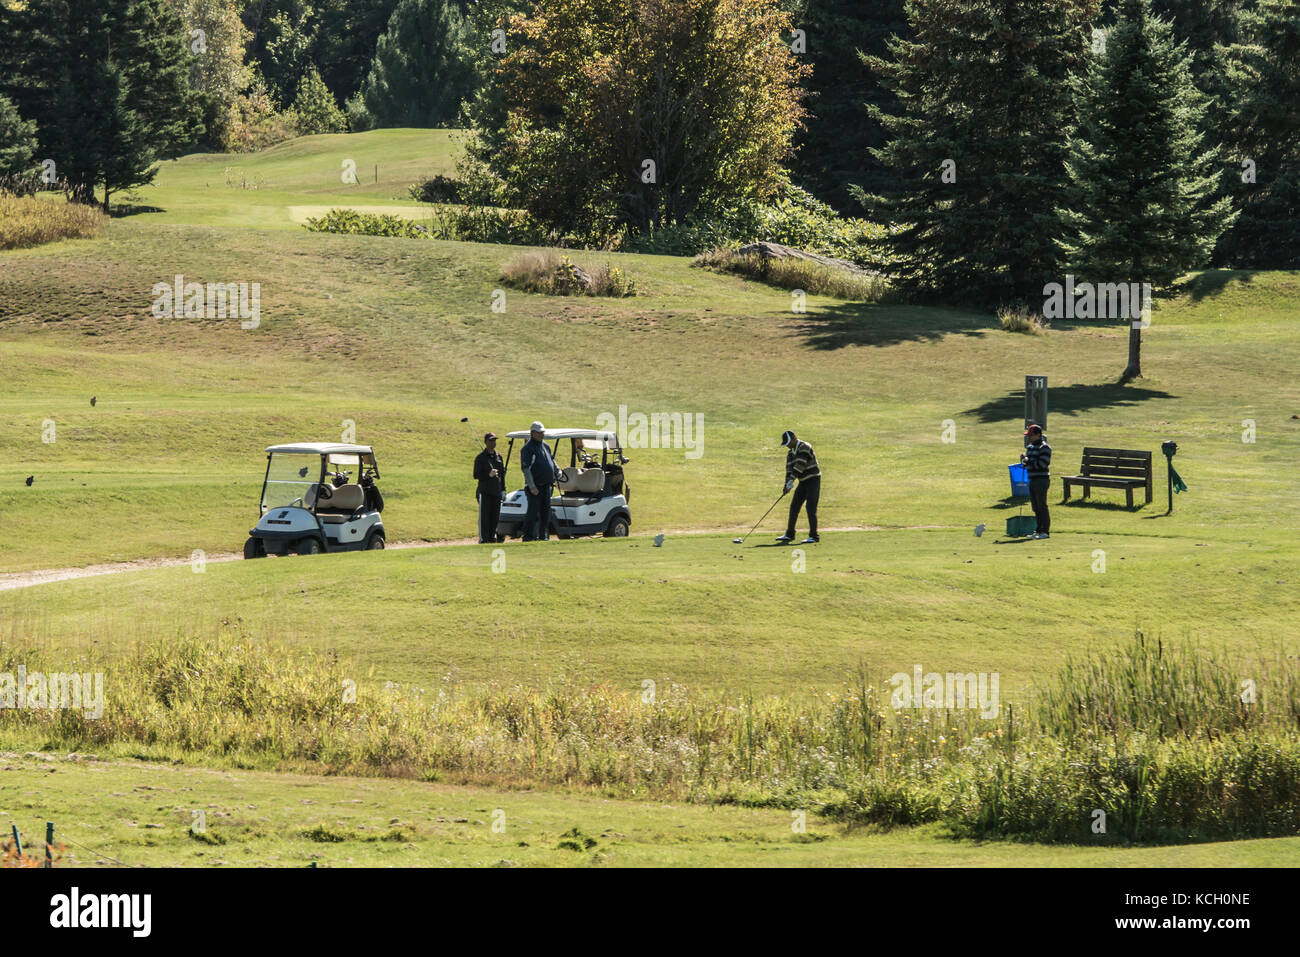 Wilno ontario canada 09.09.2017 - giocatore di golf Golf giocatori che giocano su verde gras su un corso outdoor tee-shot canadese di eventi Foto Stock